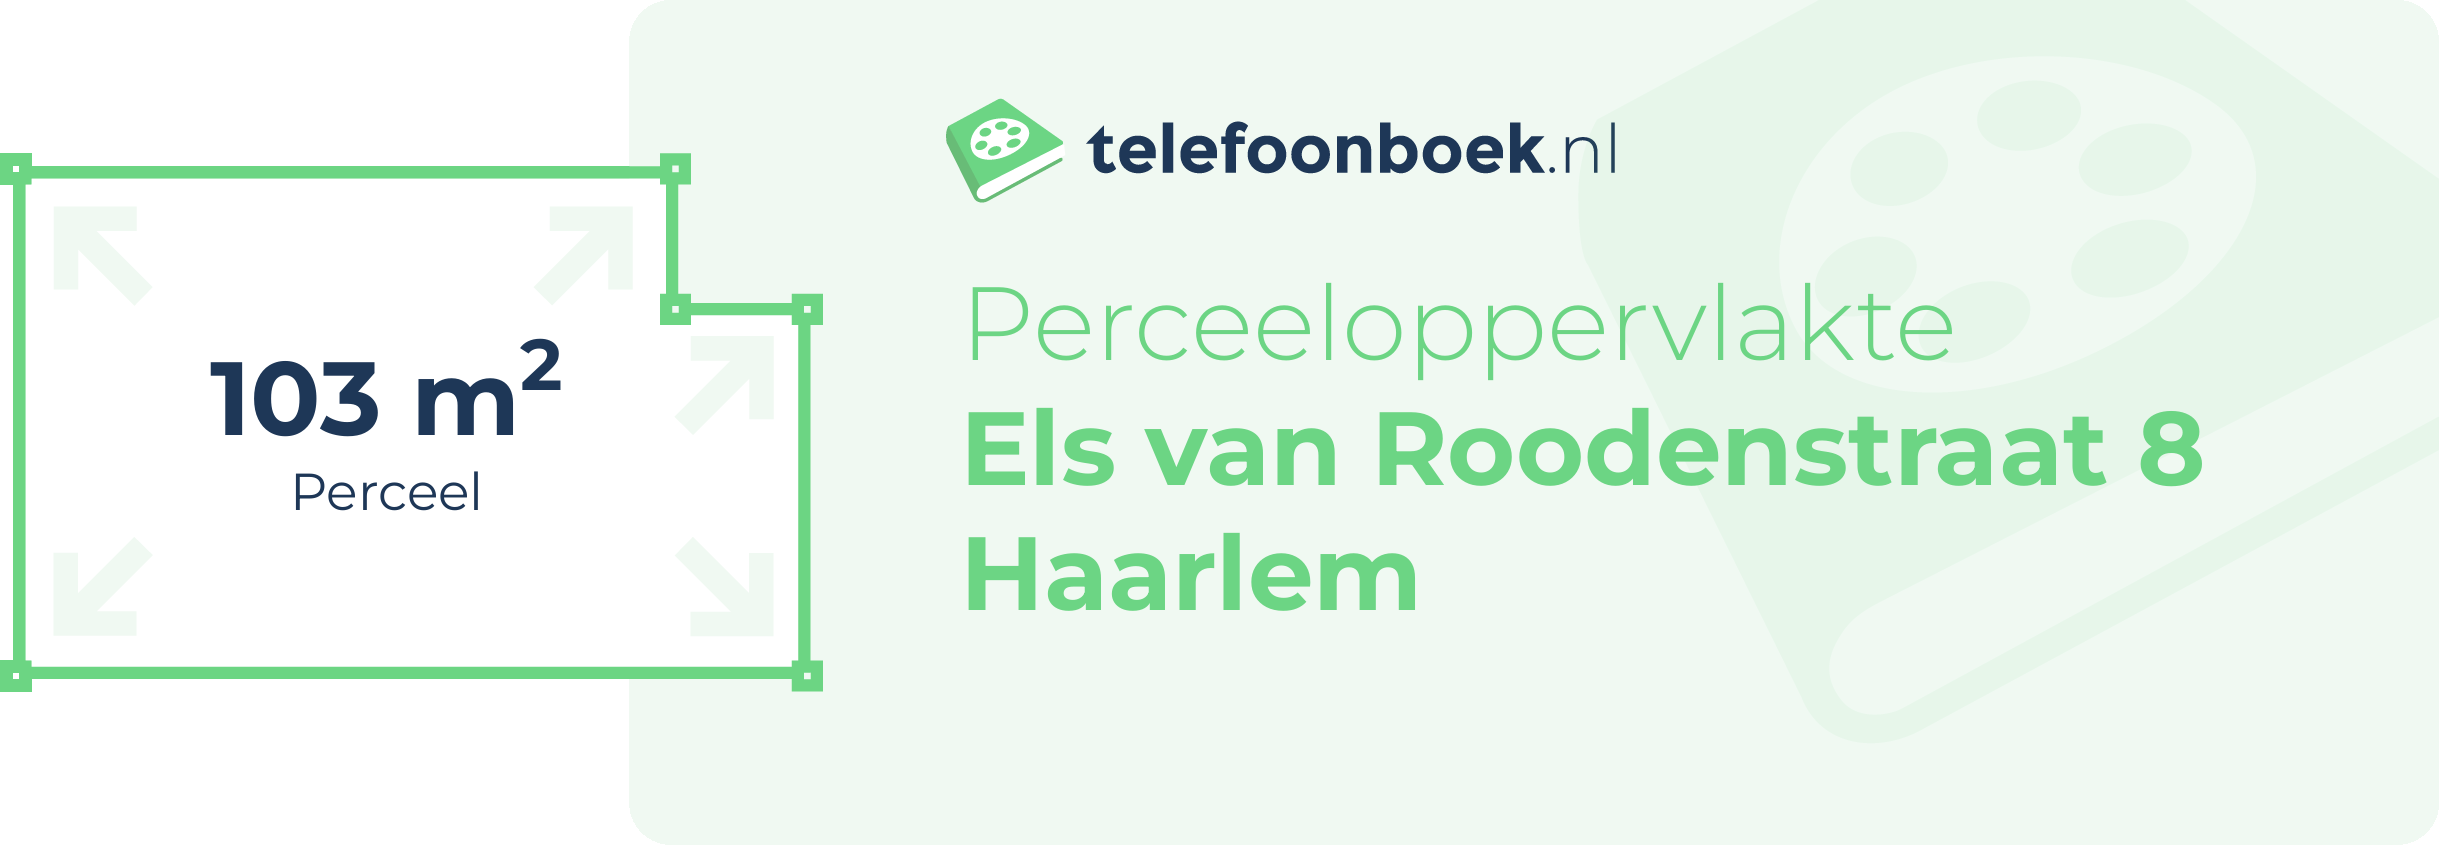 Perceeloppervlakte Els Van Roodenstraat 8 Haarlem